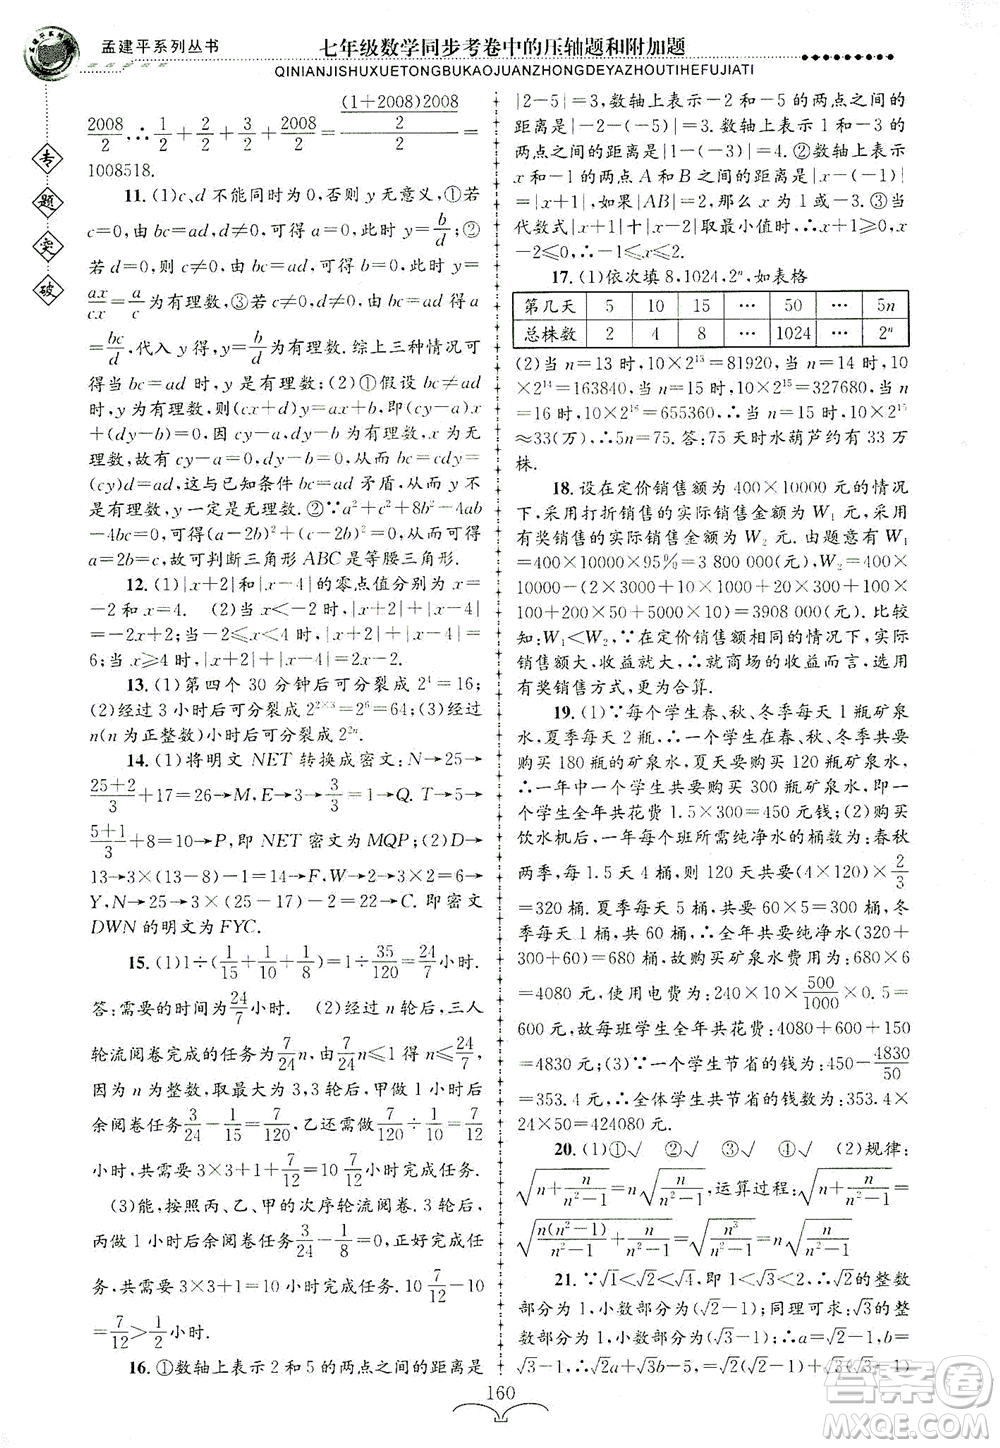 浙江工商大学出版社2021专题突破同步考卷中的压轴题和附加题七年级数学答案